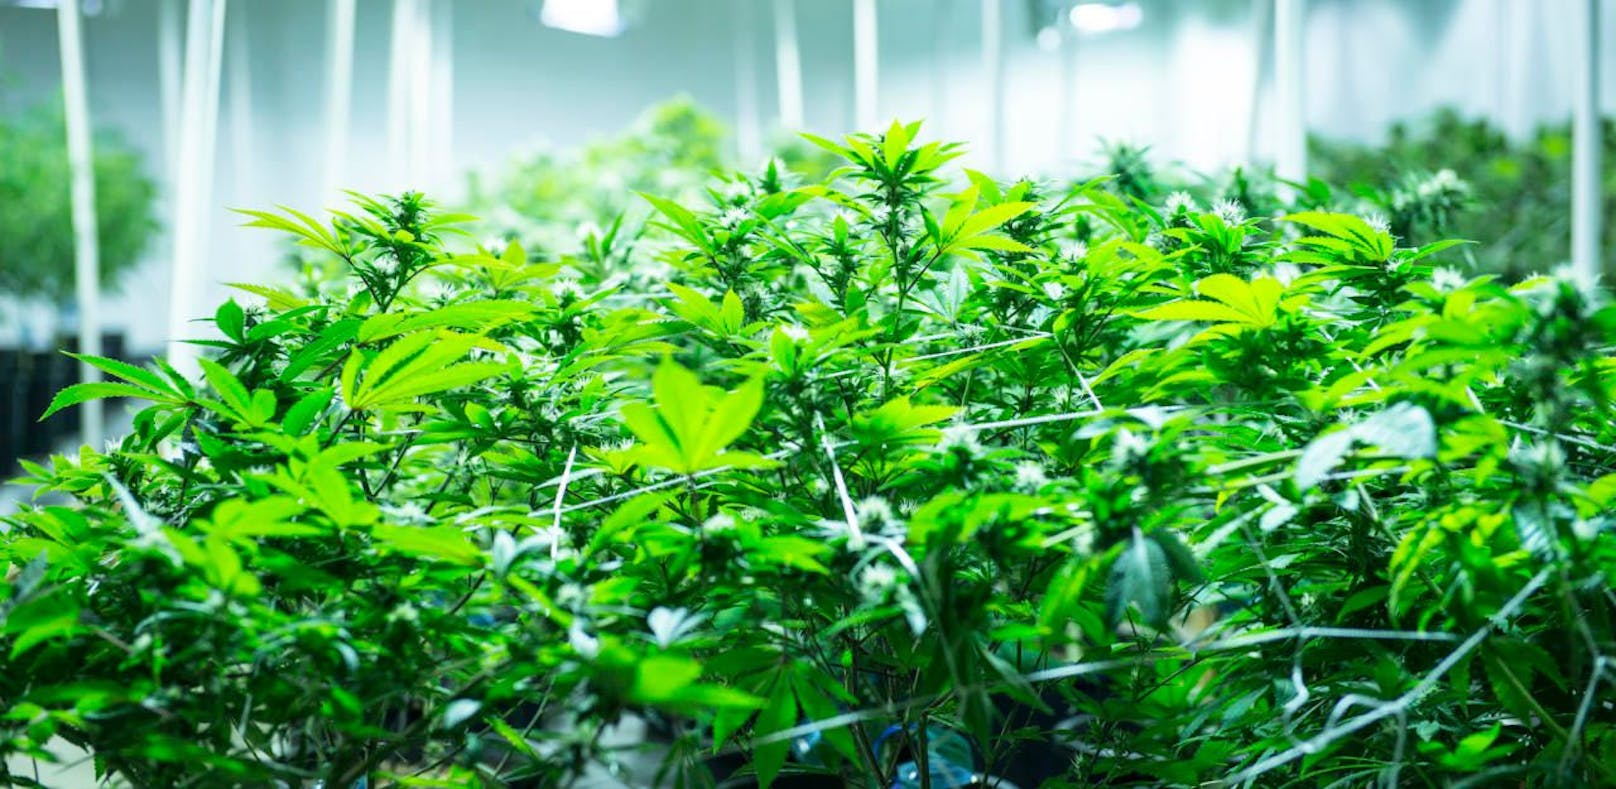 Die Polizei fand in einer Meidlinger Wohnung eine Cannabis-Plantage (Symbolbild).